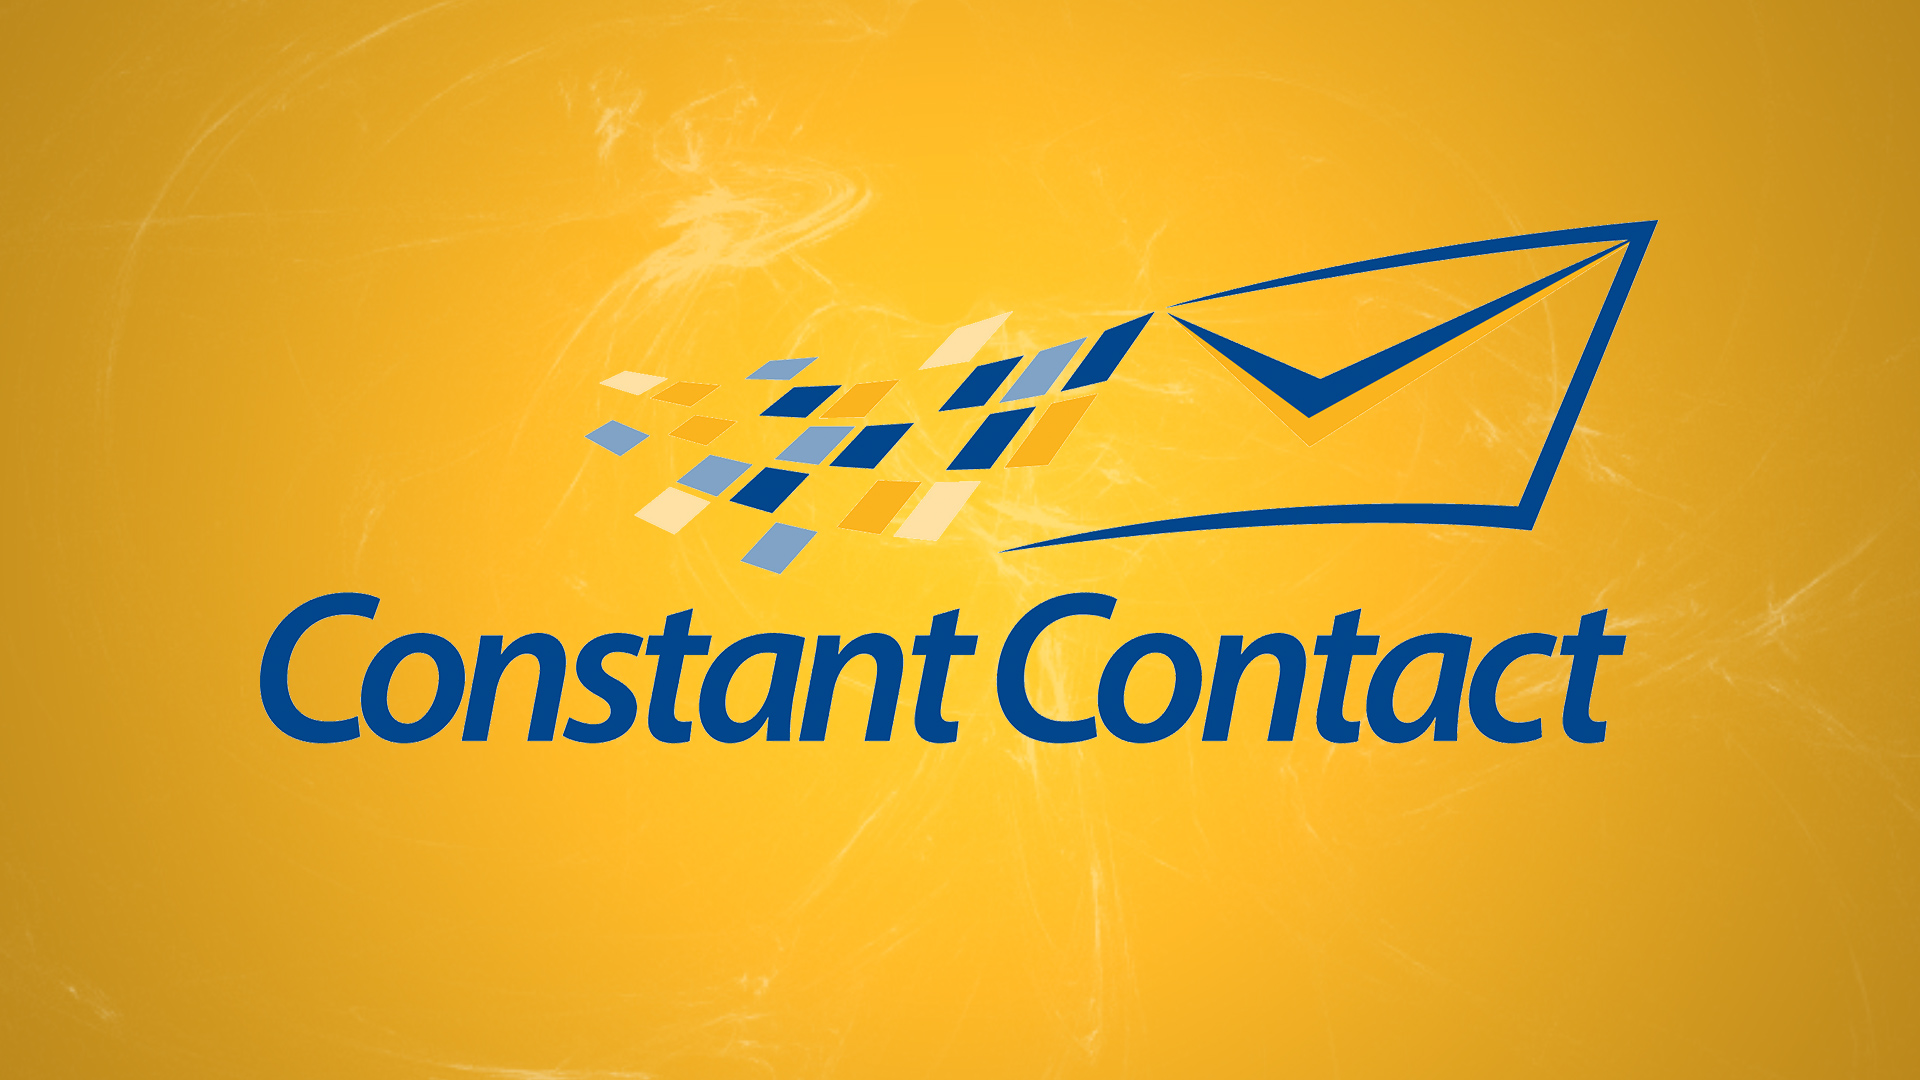 Constant Contact launches e-commerce enhancements